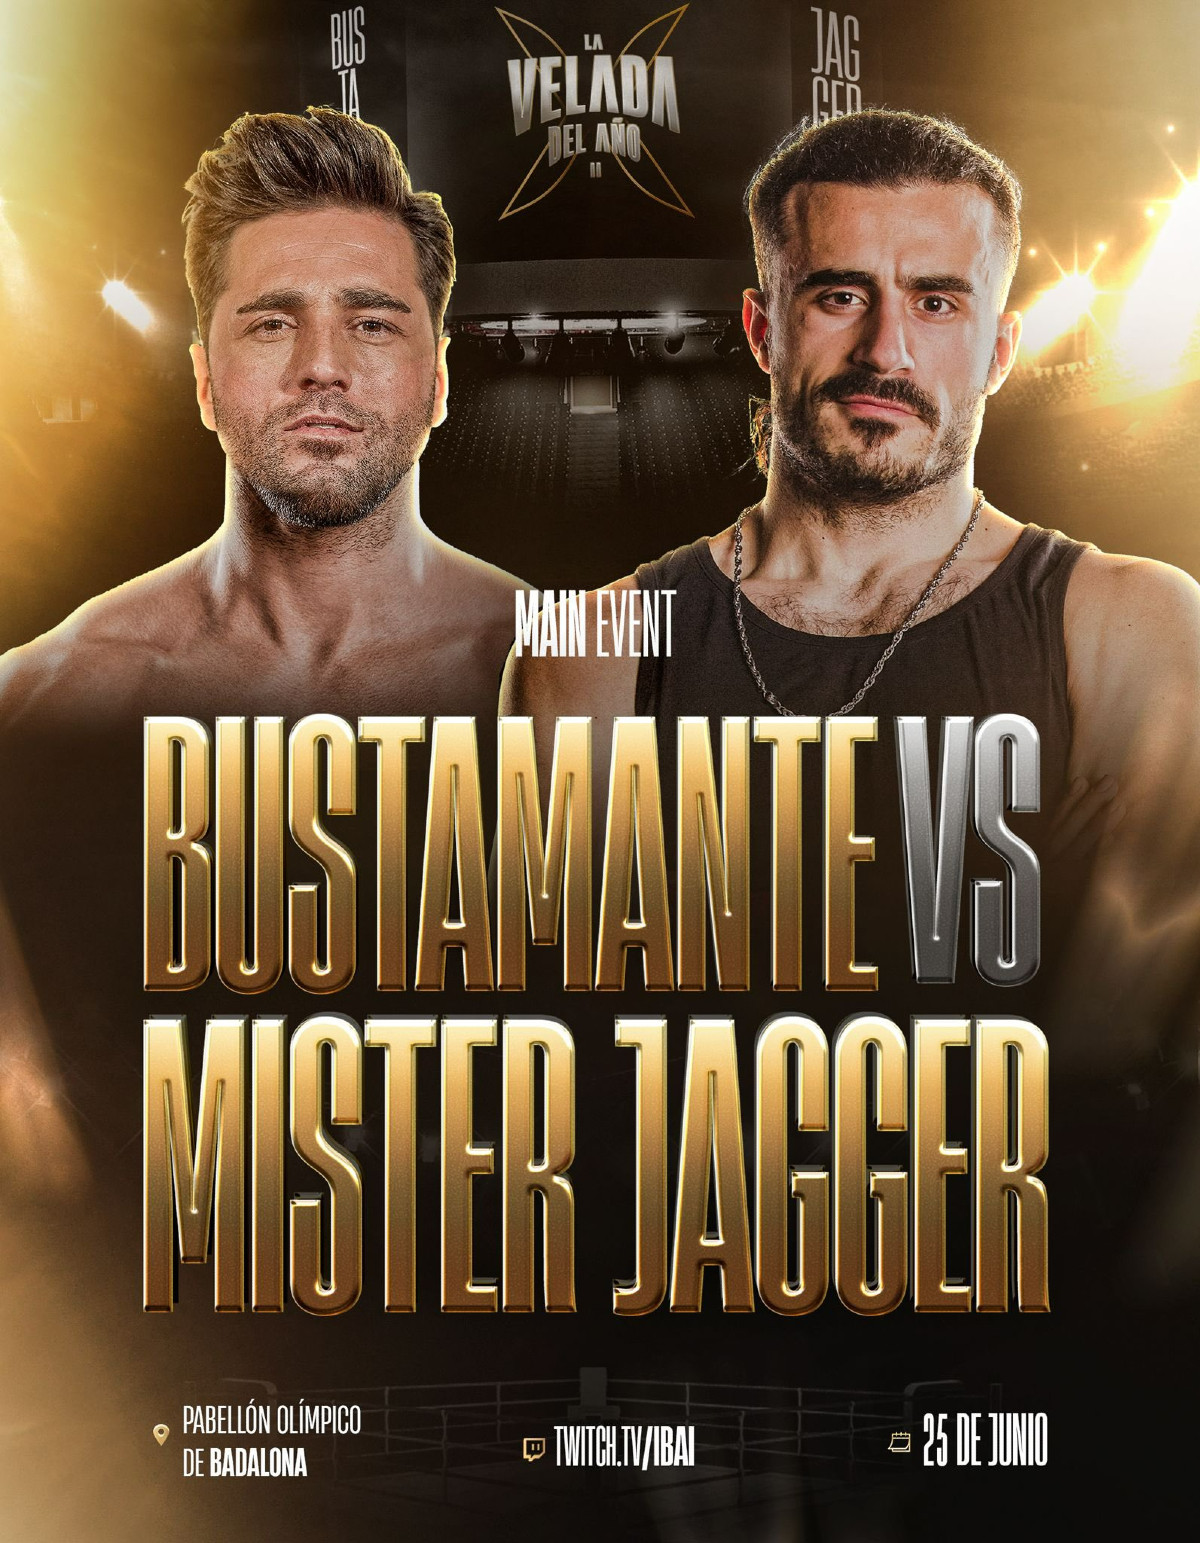 Cartel del combate entre David Bustamante y Míster Jagger TWITTER